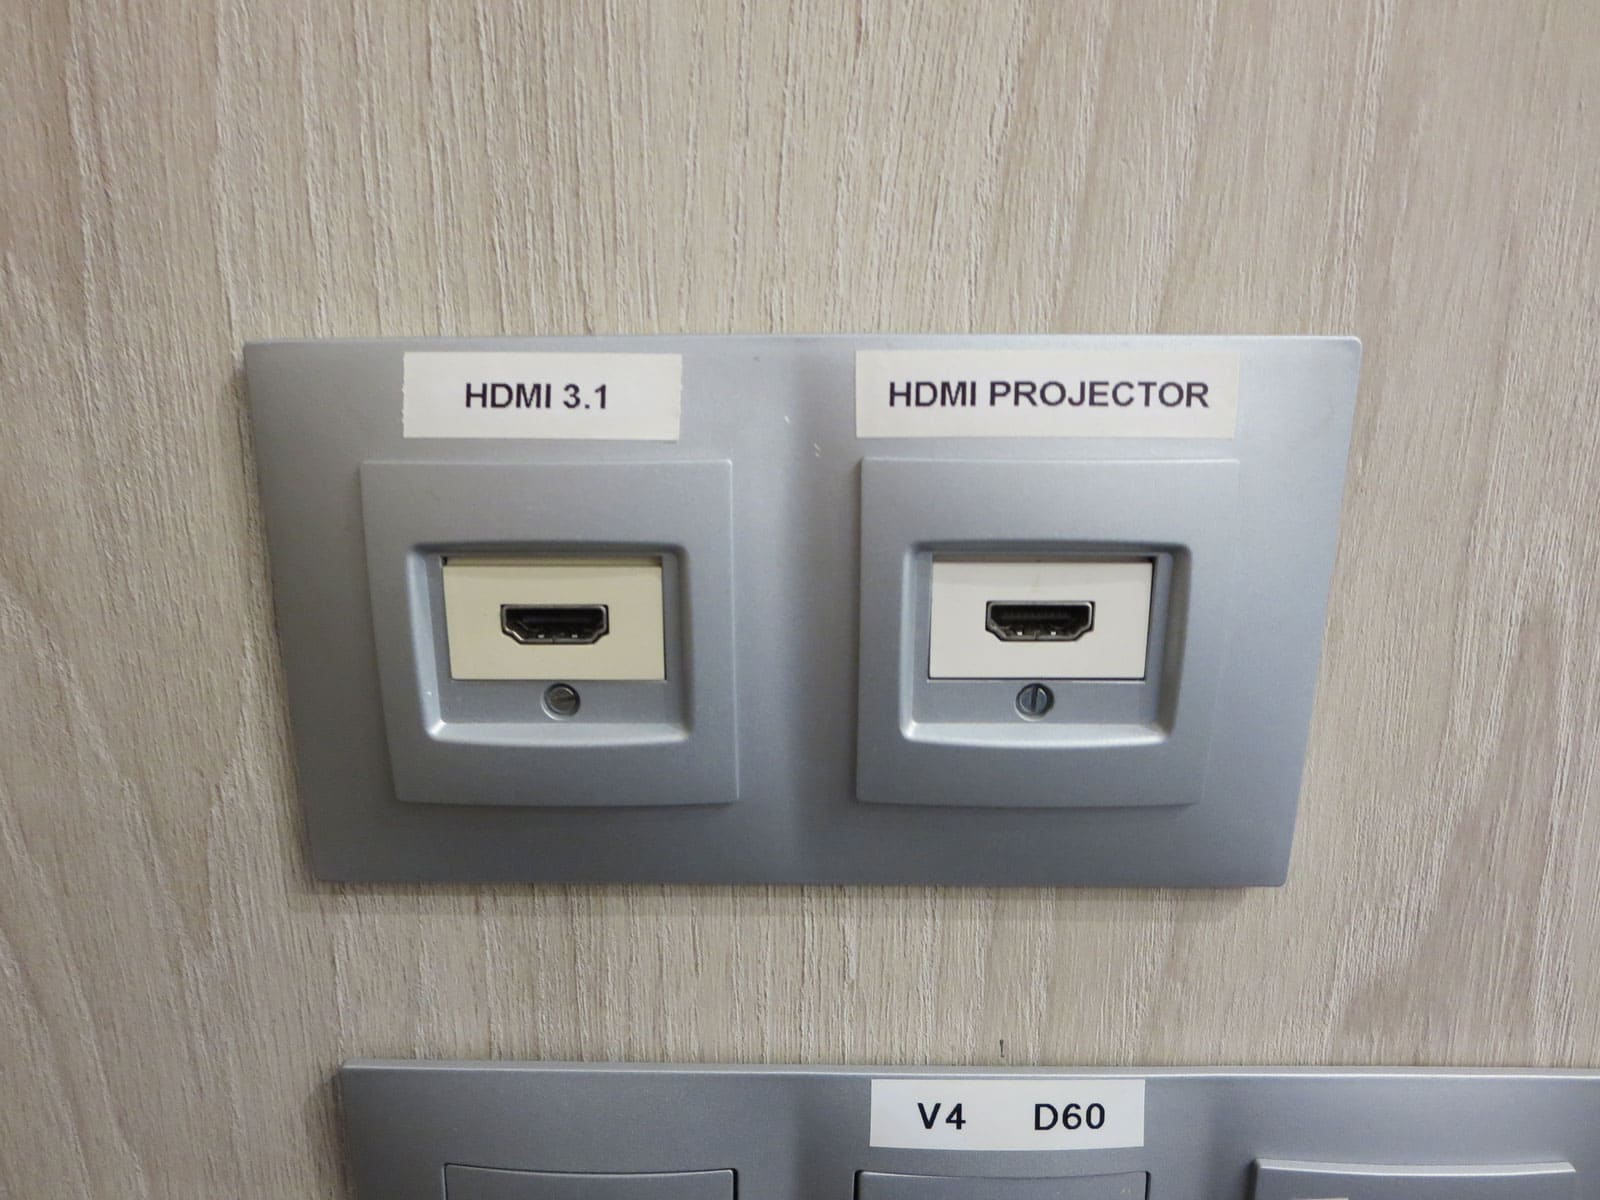 connexió hdmi - conección hdmi - intalación equipos de video - instal·lació equips de video